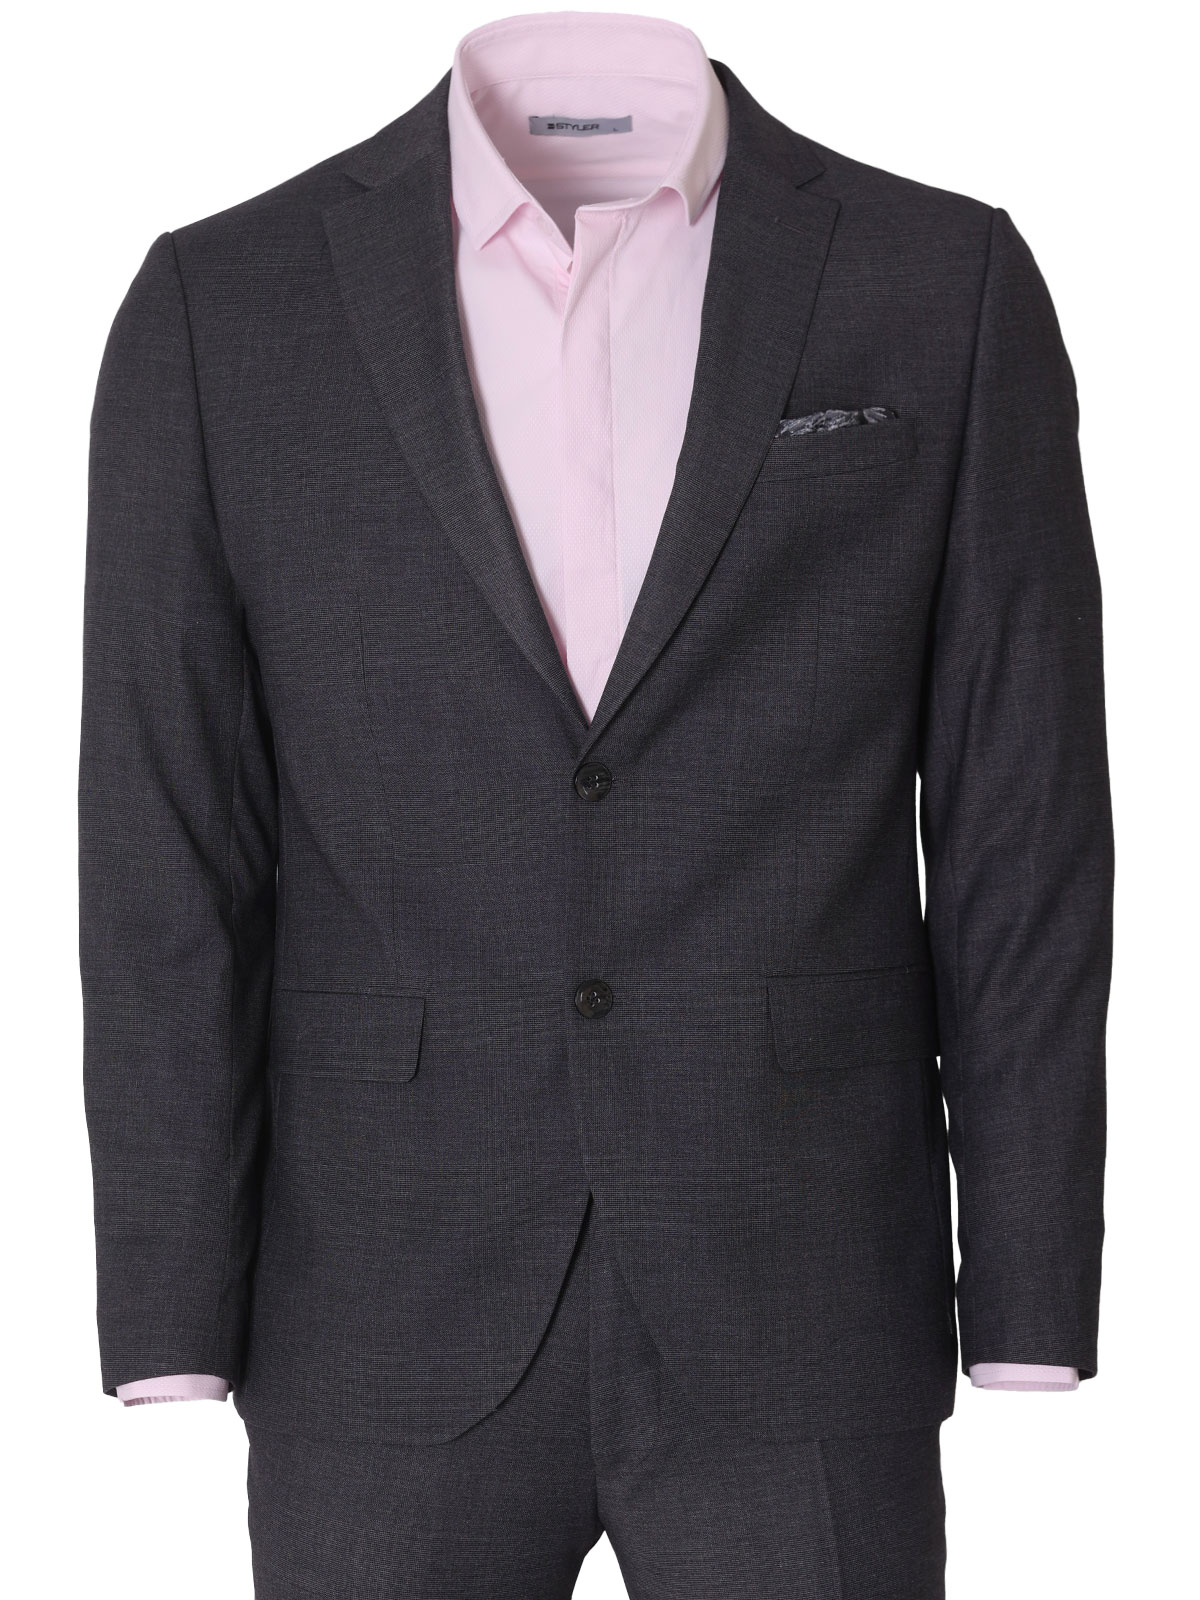 Κομψό ανδρικό κοστούμι σε γκρι χρώμα - 68076 € 212.60 img3